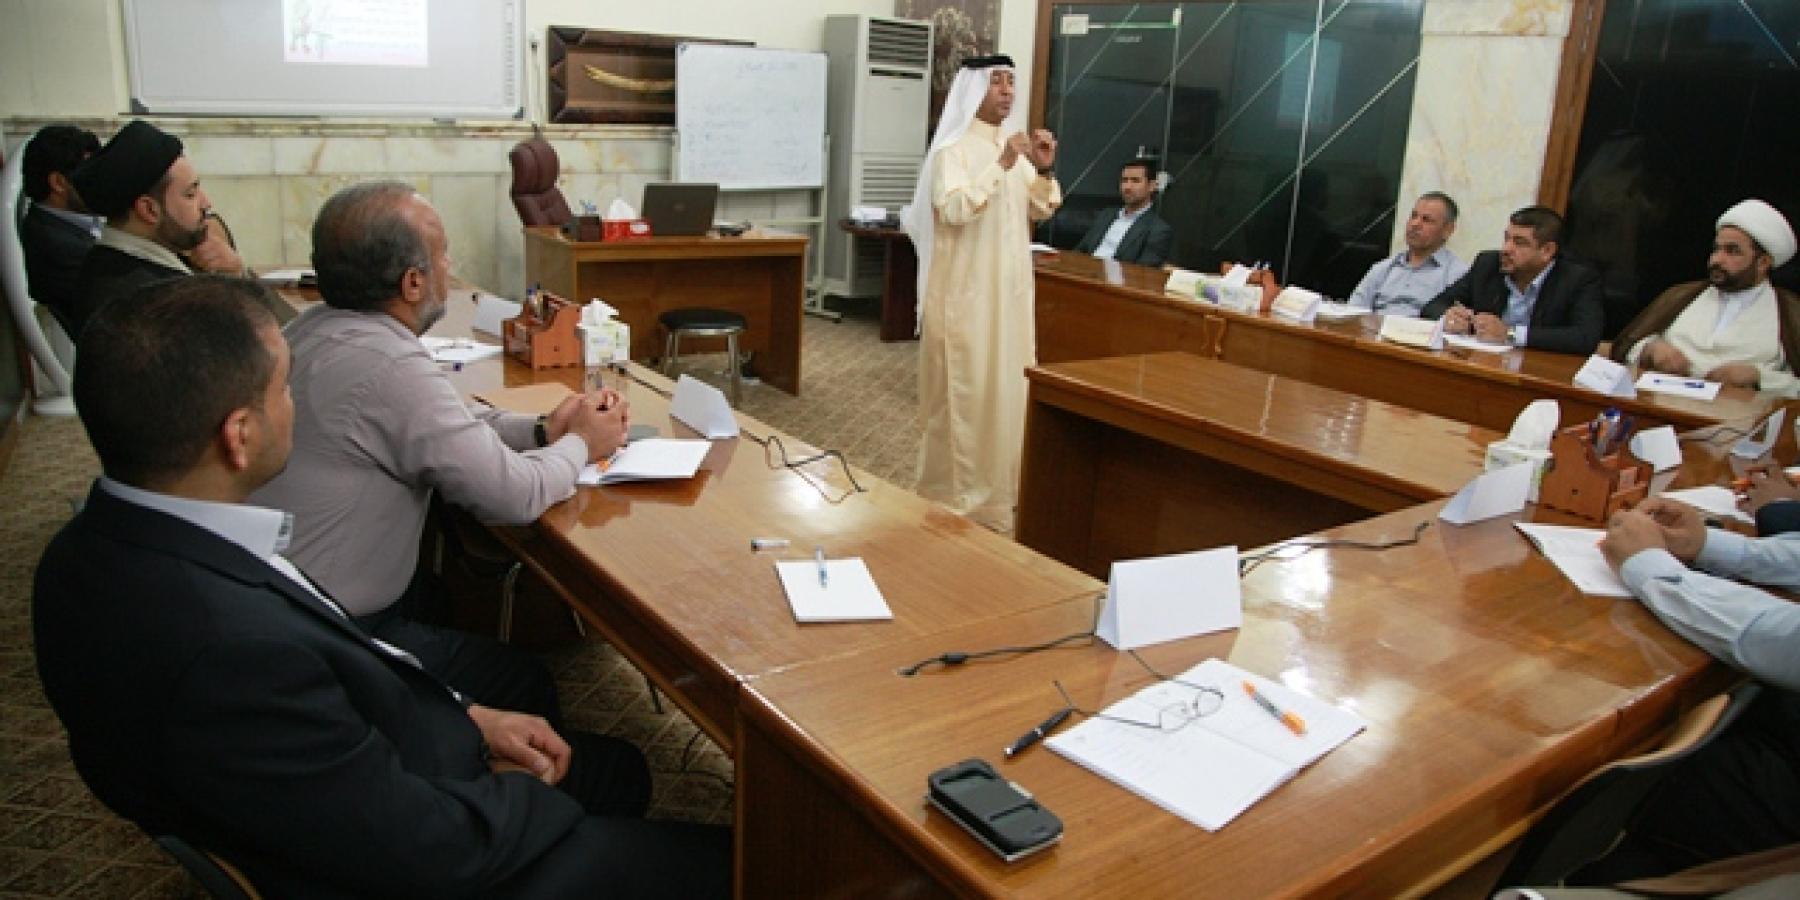 شعبة التنمية البشرية في العتبة العلوية المقدسة تقيم دورة لتعليم أساسيات التدريب بمشاركة محاضرين عرب متخصصين